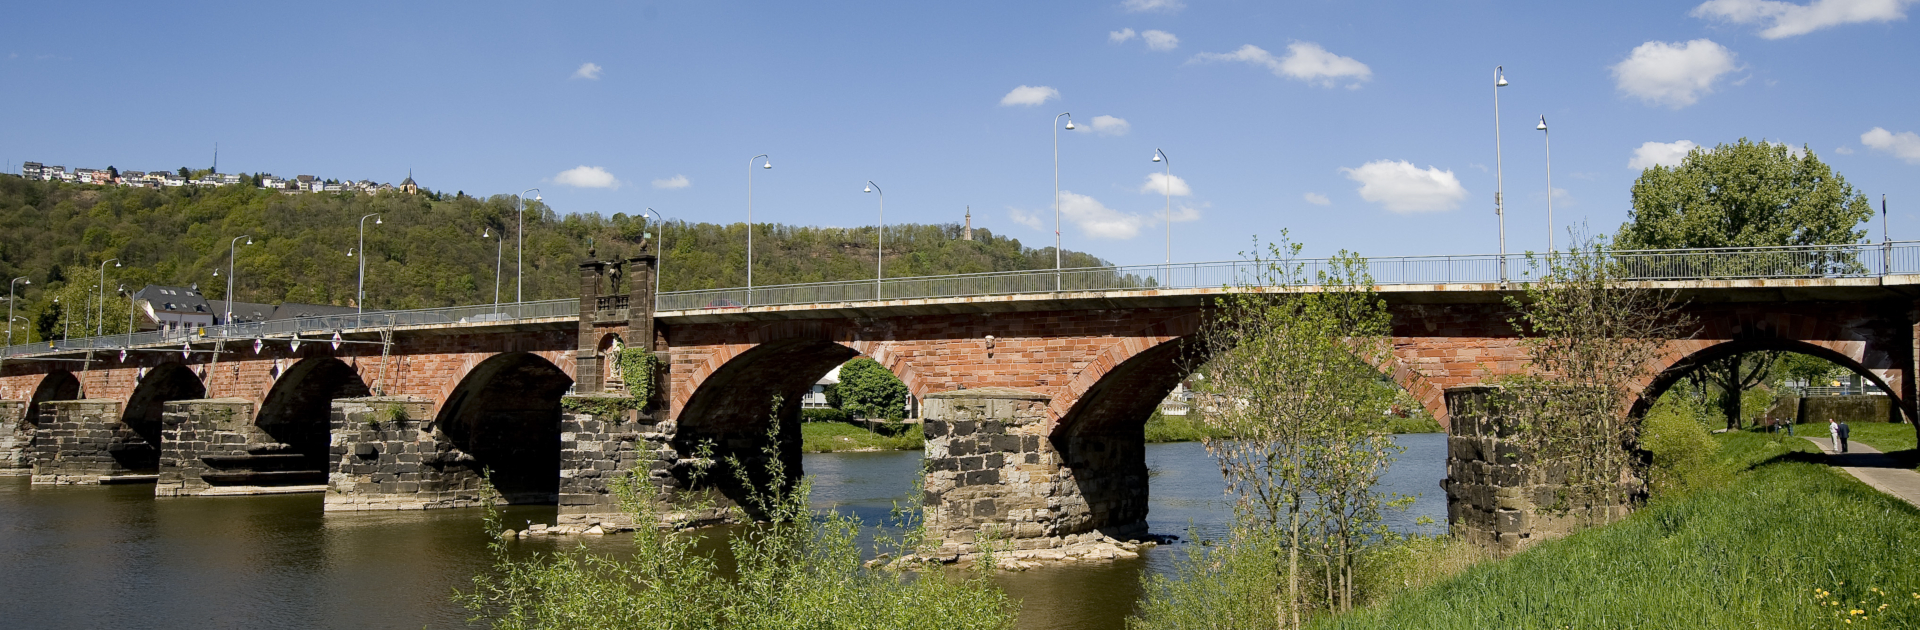 Römerbrücke Trier - UNESCO-Welterbe - © Trier Tourismus und Marketing GmbH